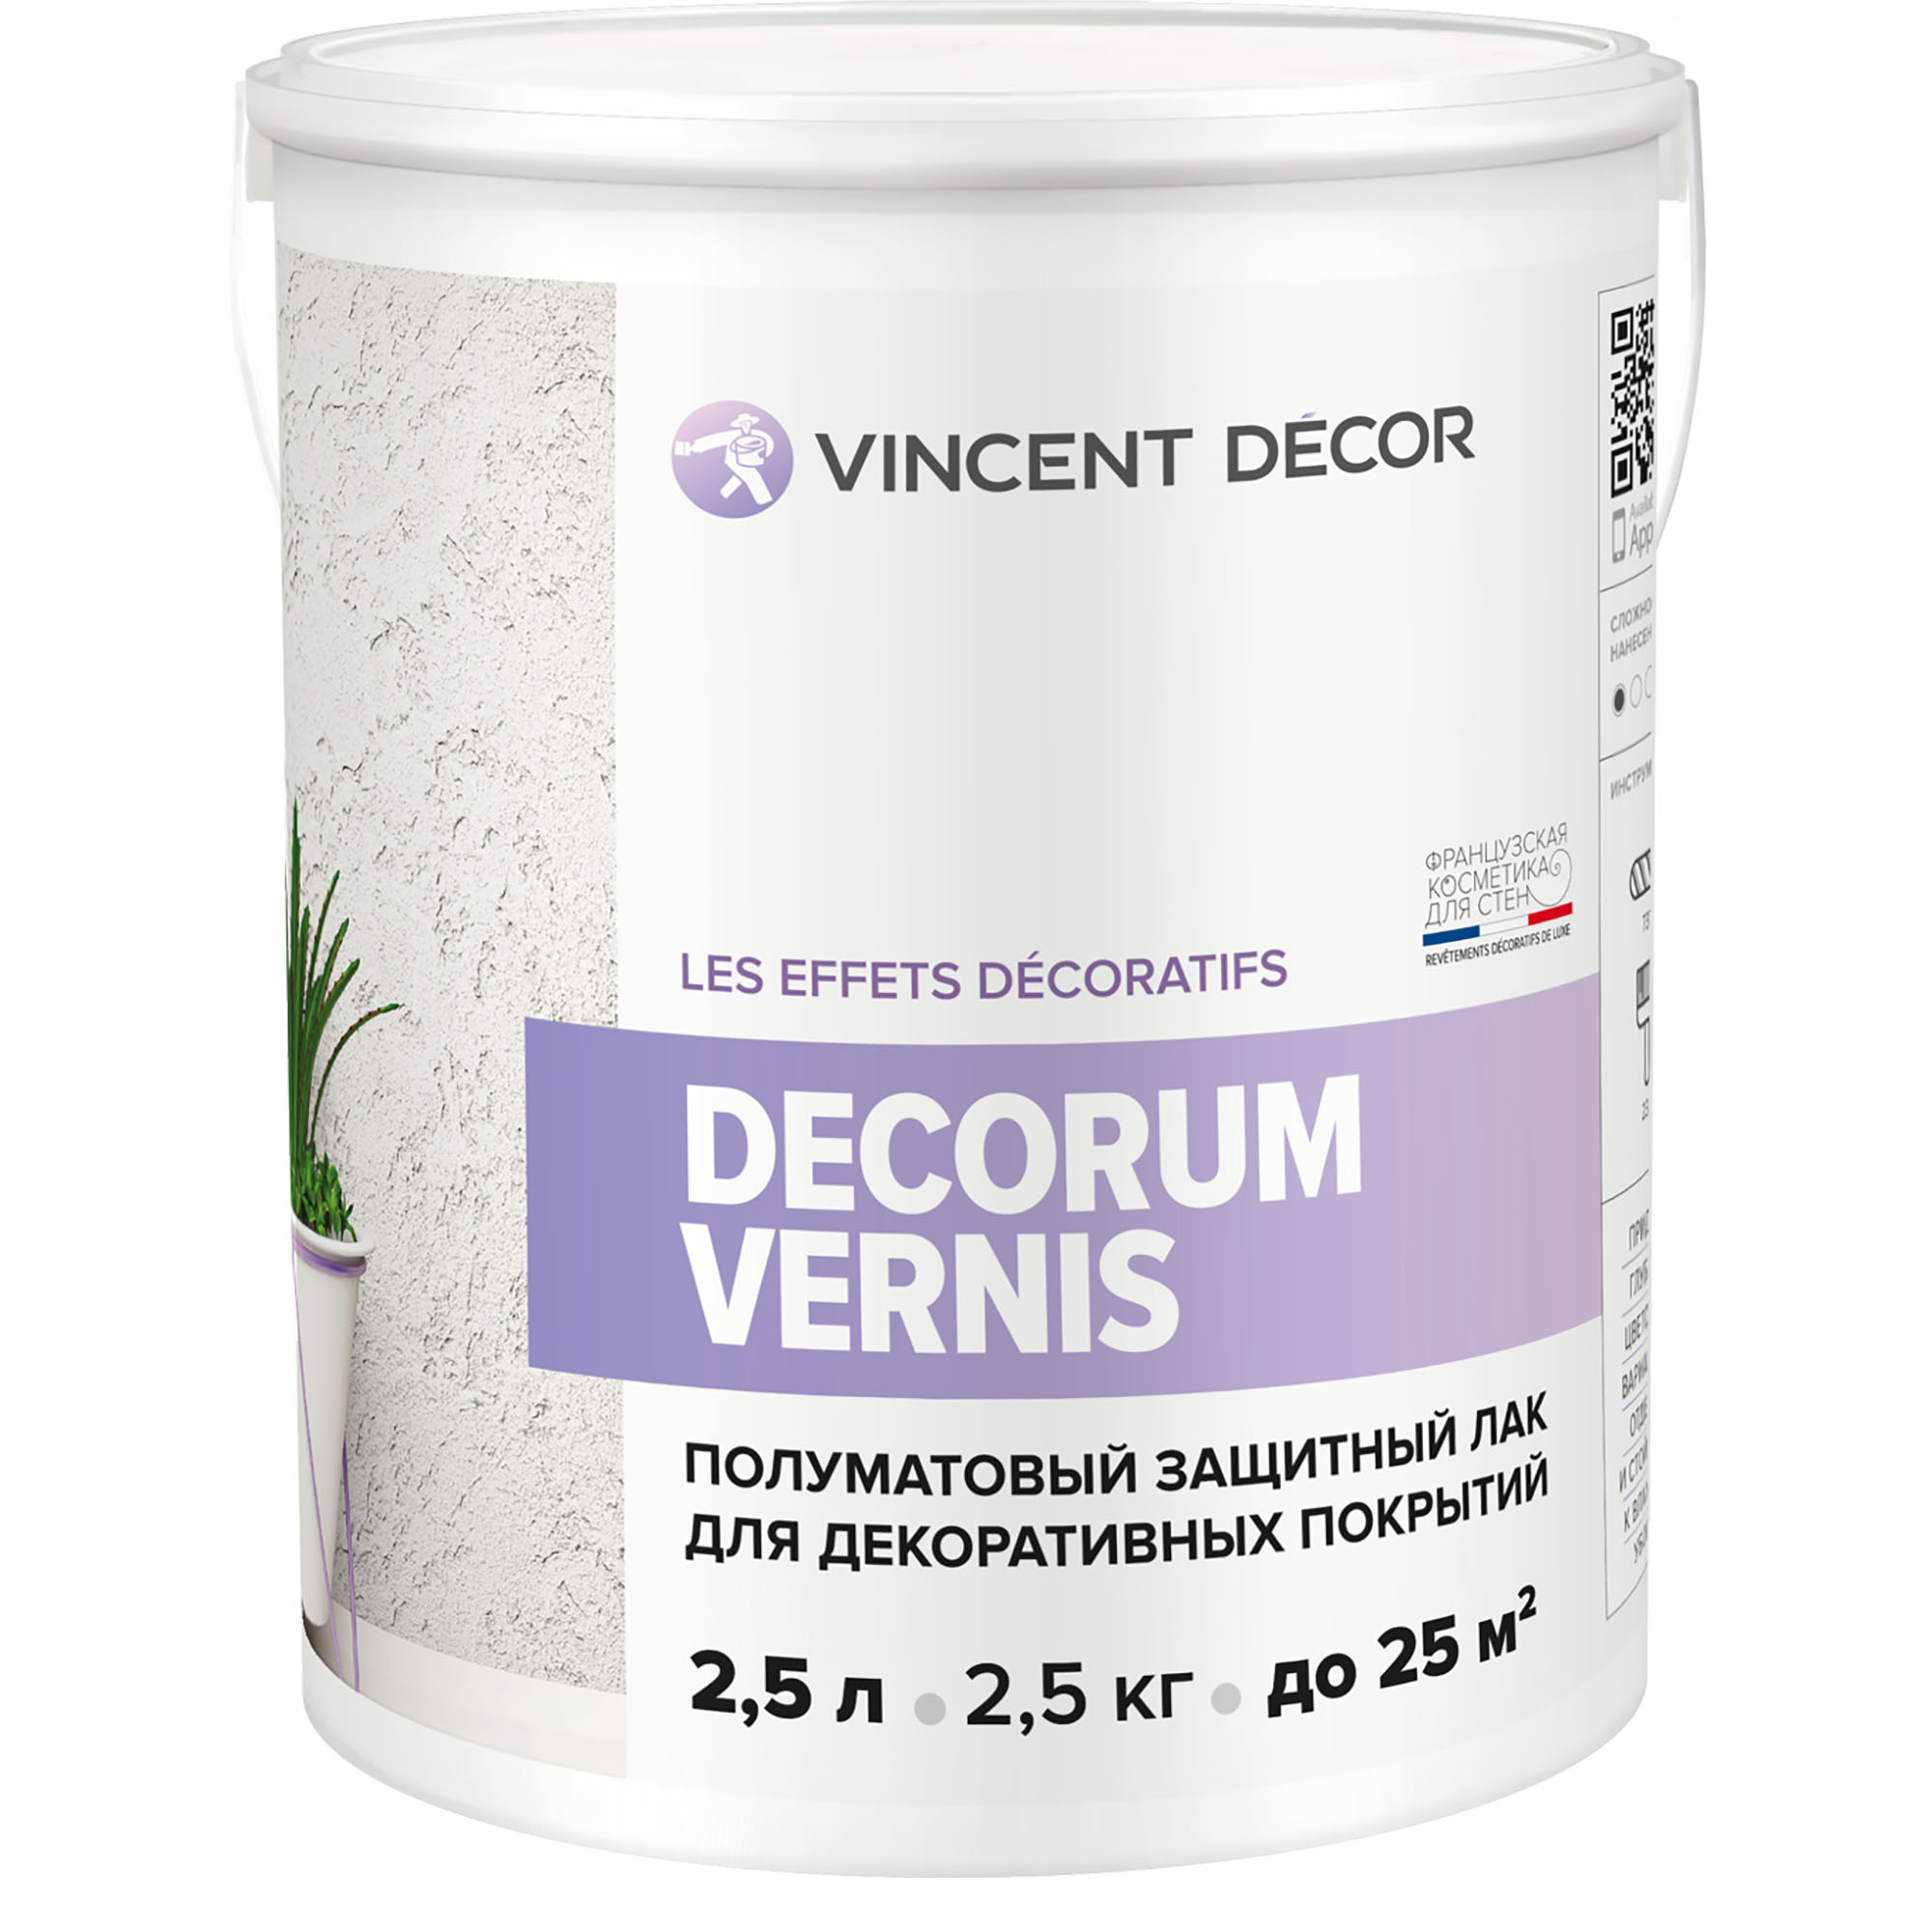 Лак защитный для декоративных покрытий Vincent Decor Decorum Vernis полуматовый 2,5 л грунтовка для декоративных покрытий vincent decor sous couche 1 л